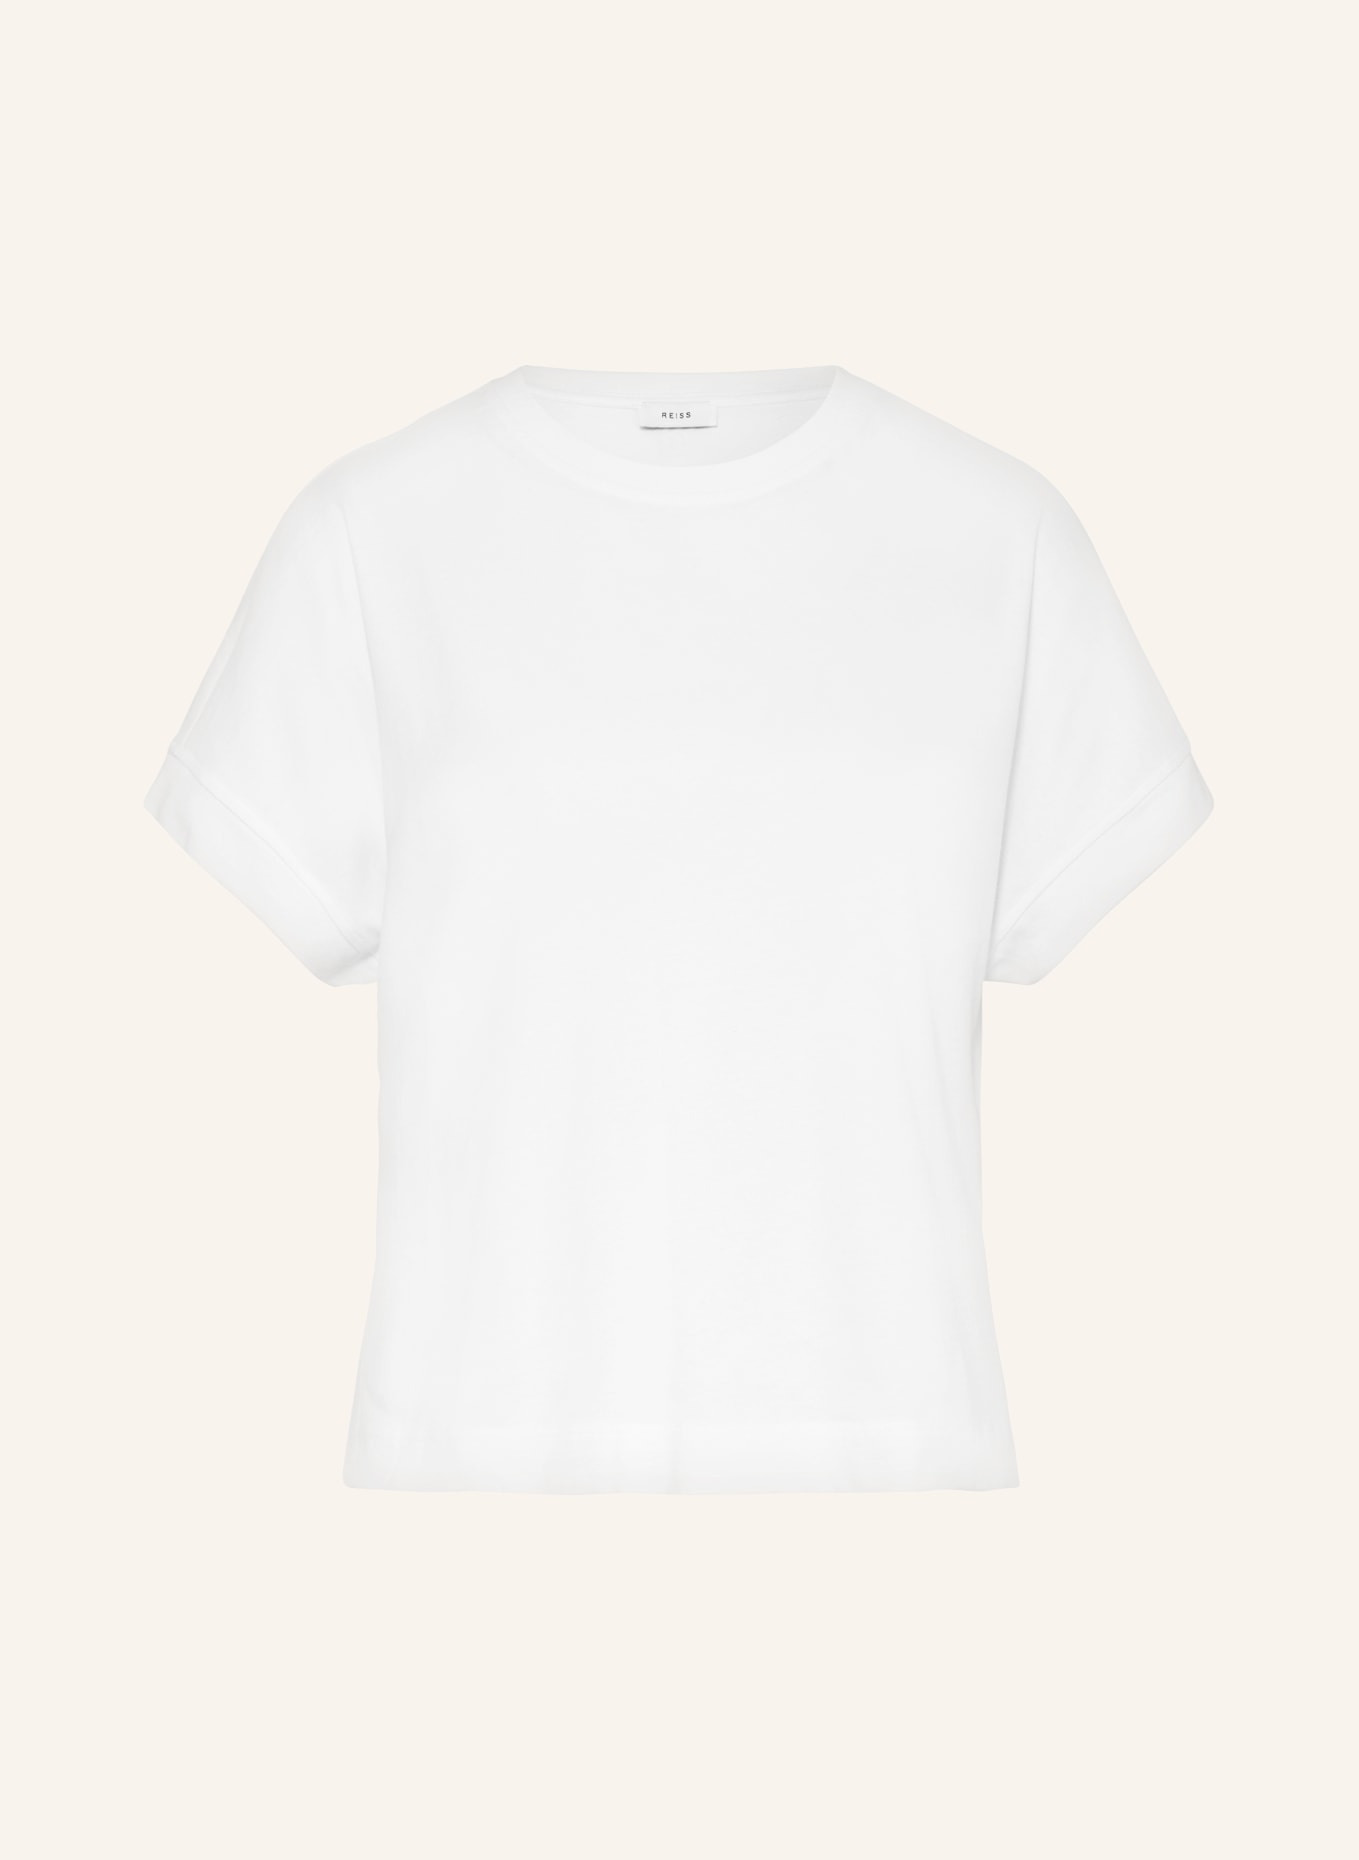 REISS T-Shirt LOIS, Farbe: WEISS (Bild 1)